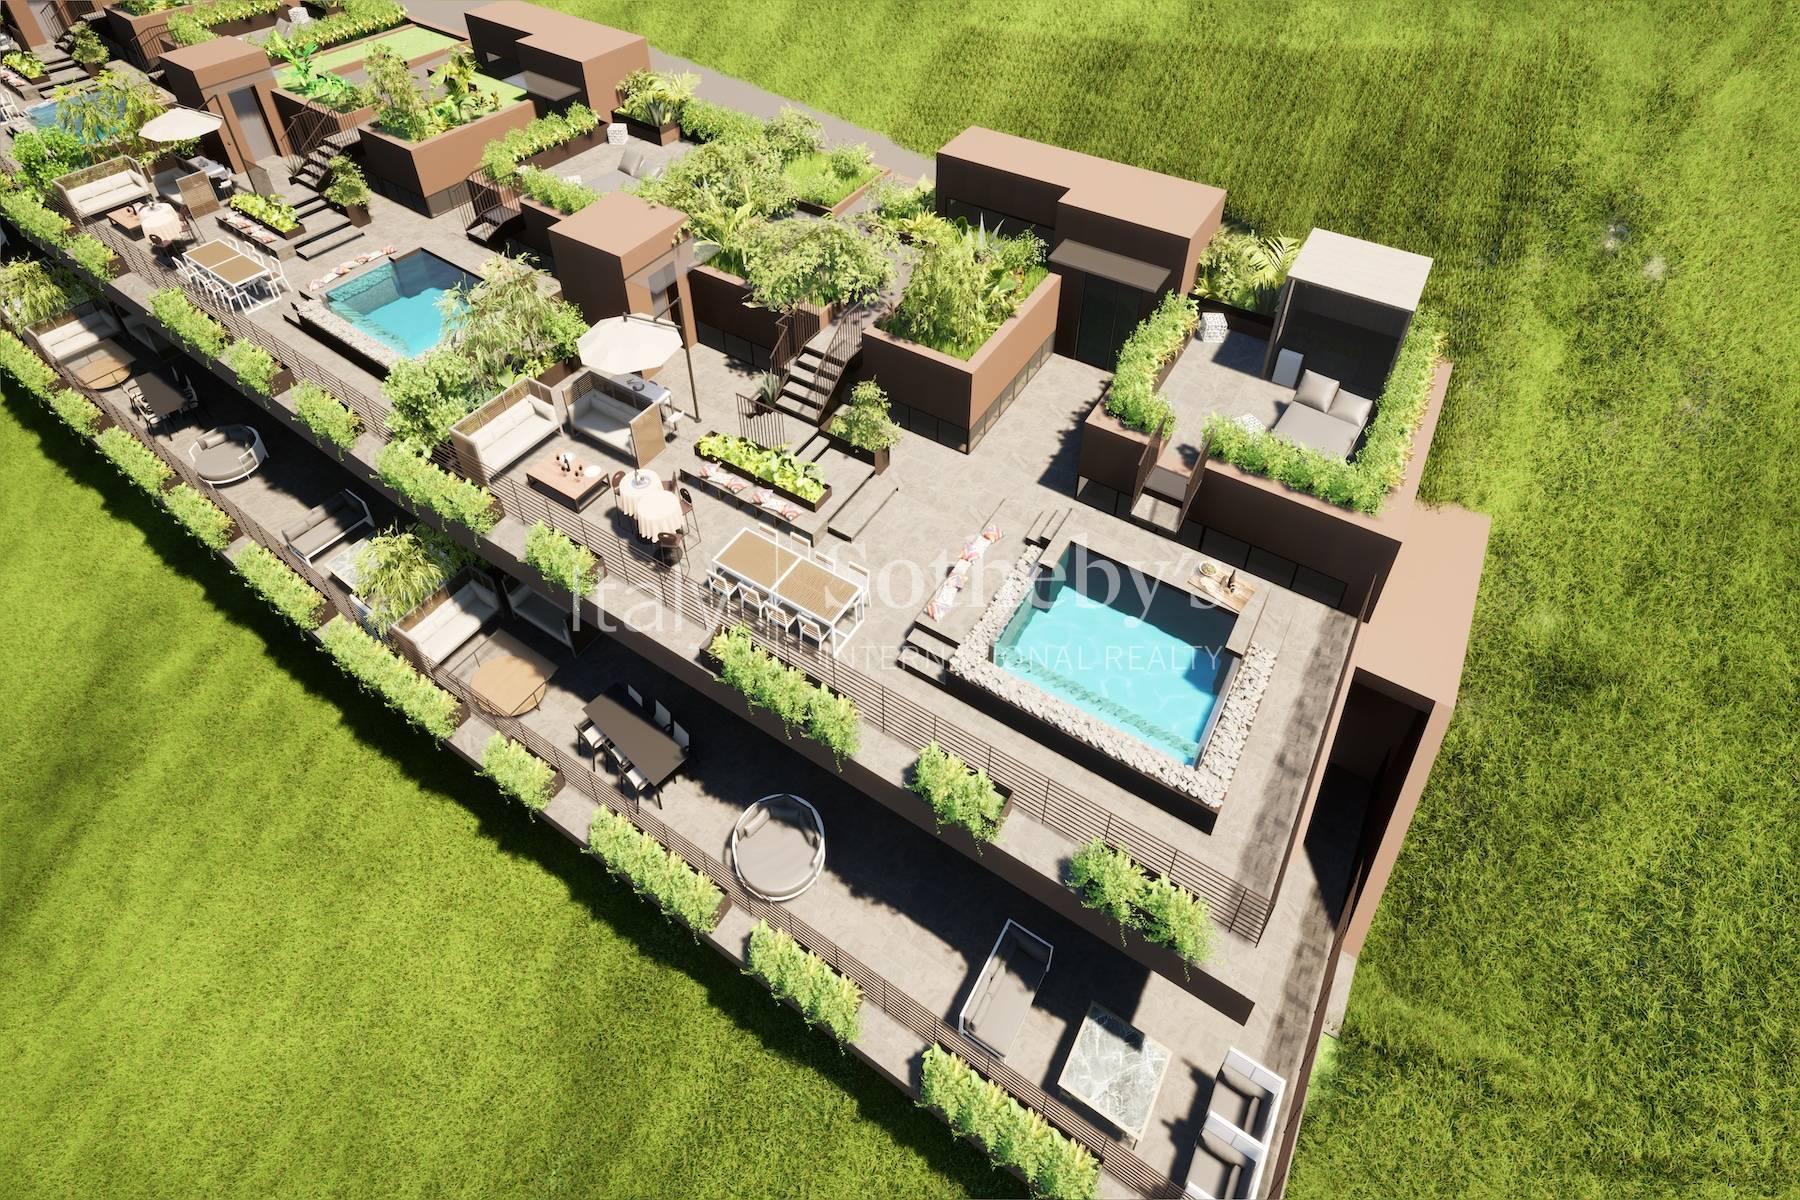 Résidence exclusive vue lac avec piscine privée sur le toit-terrasse - 2